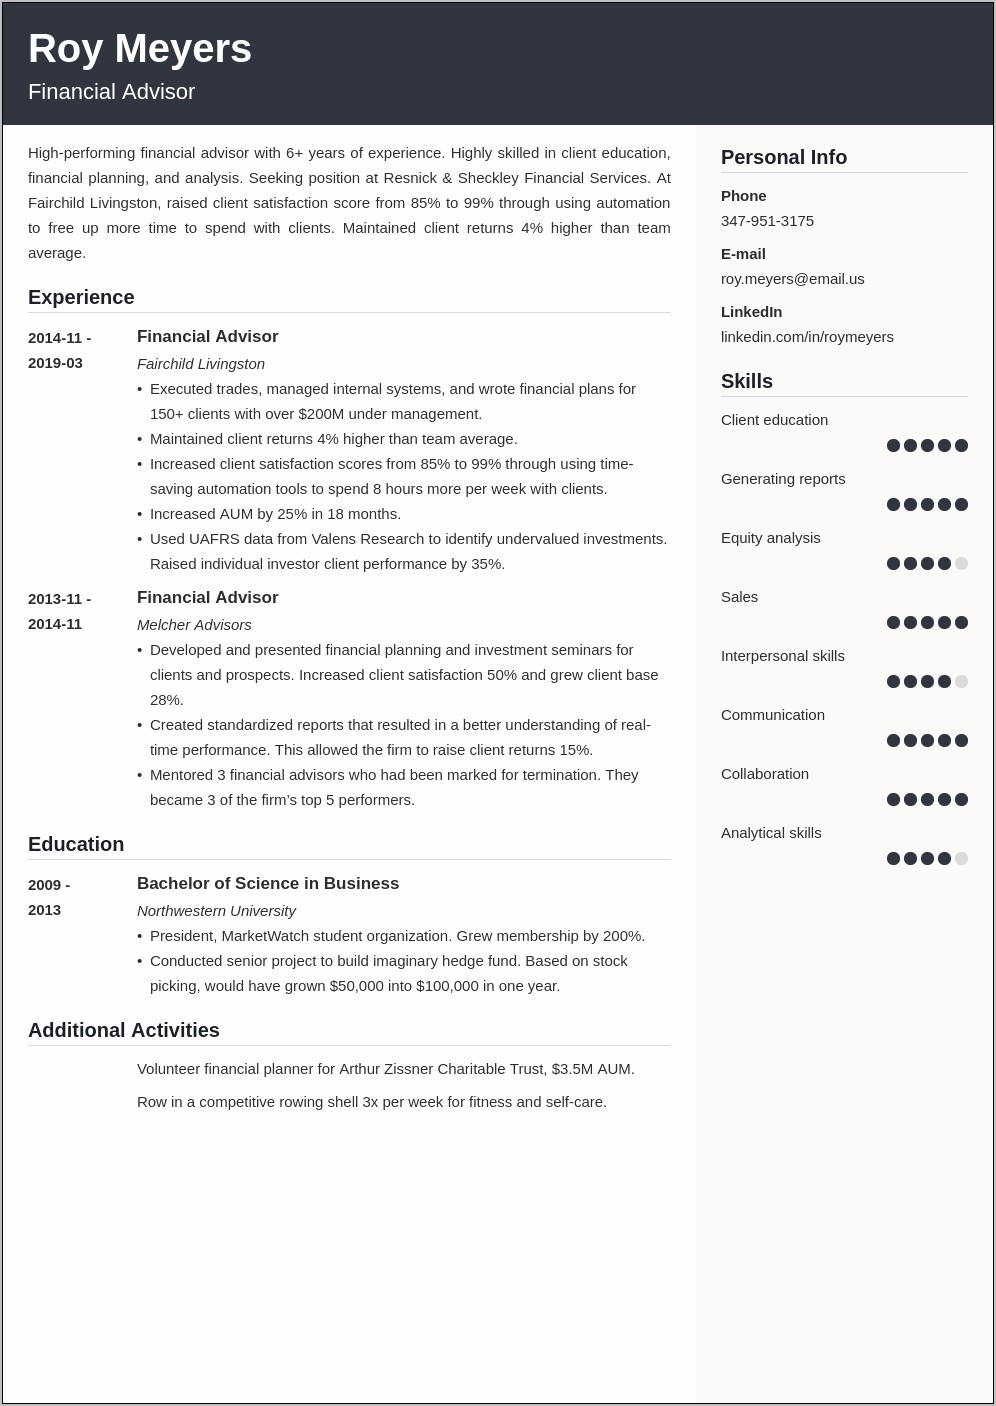 Sample Resume For Financial Advisor Position